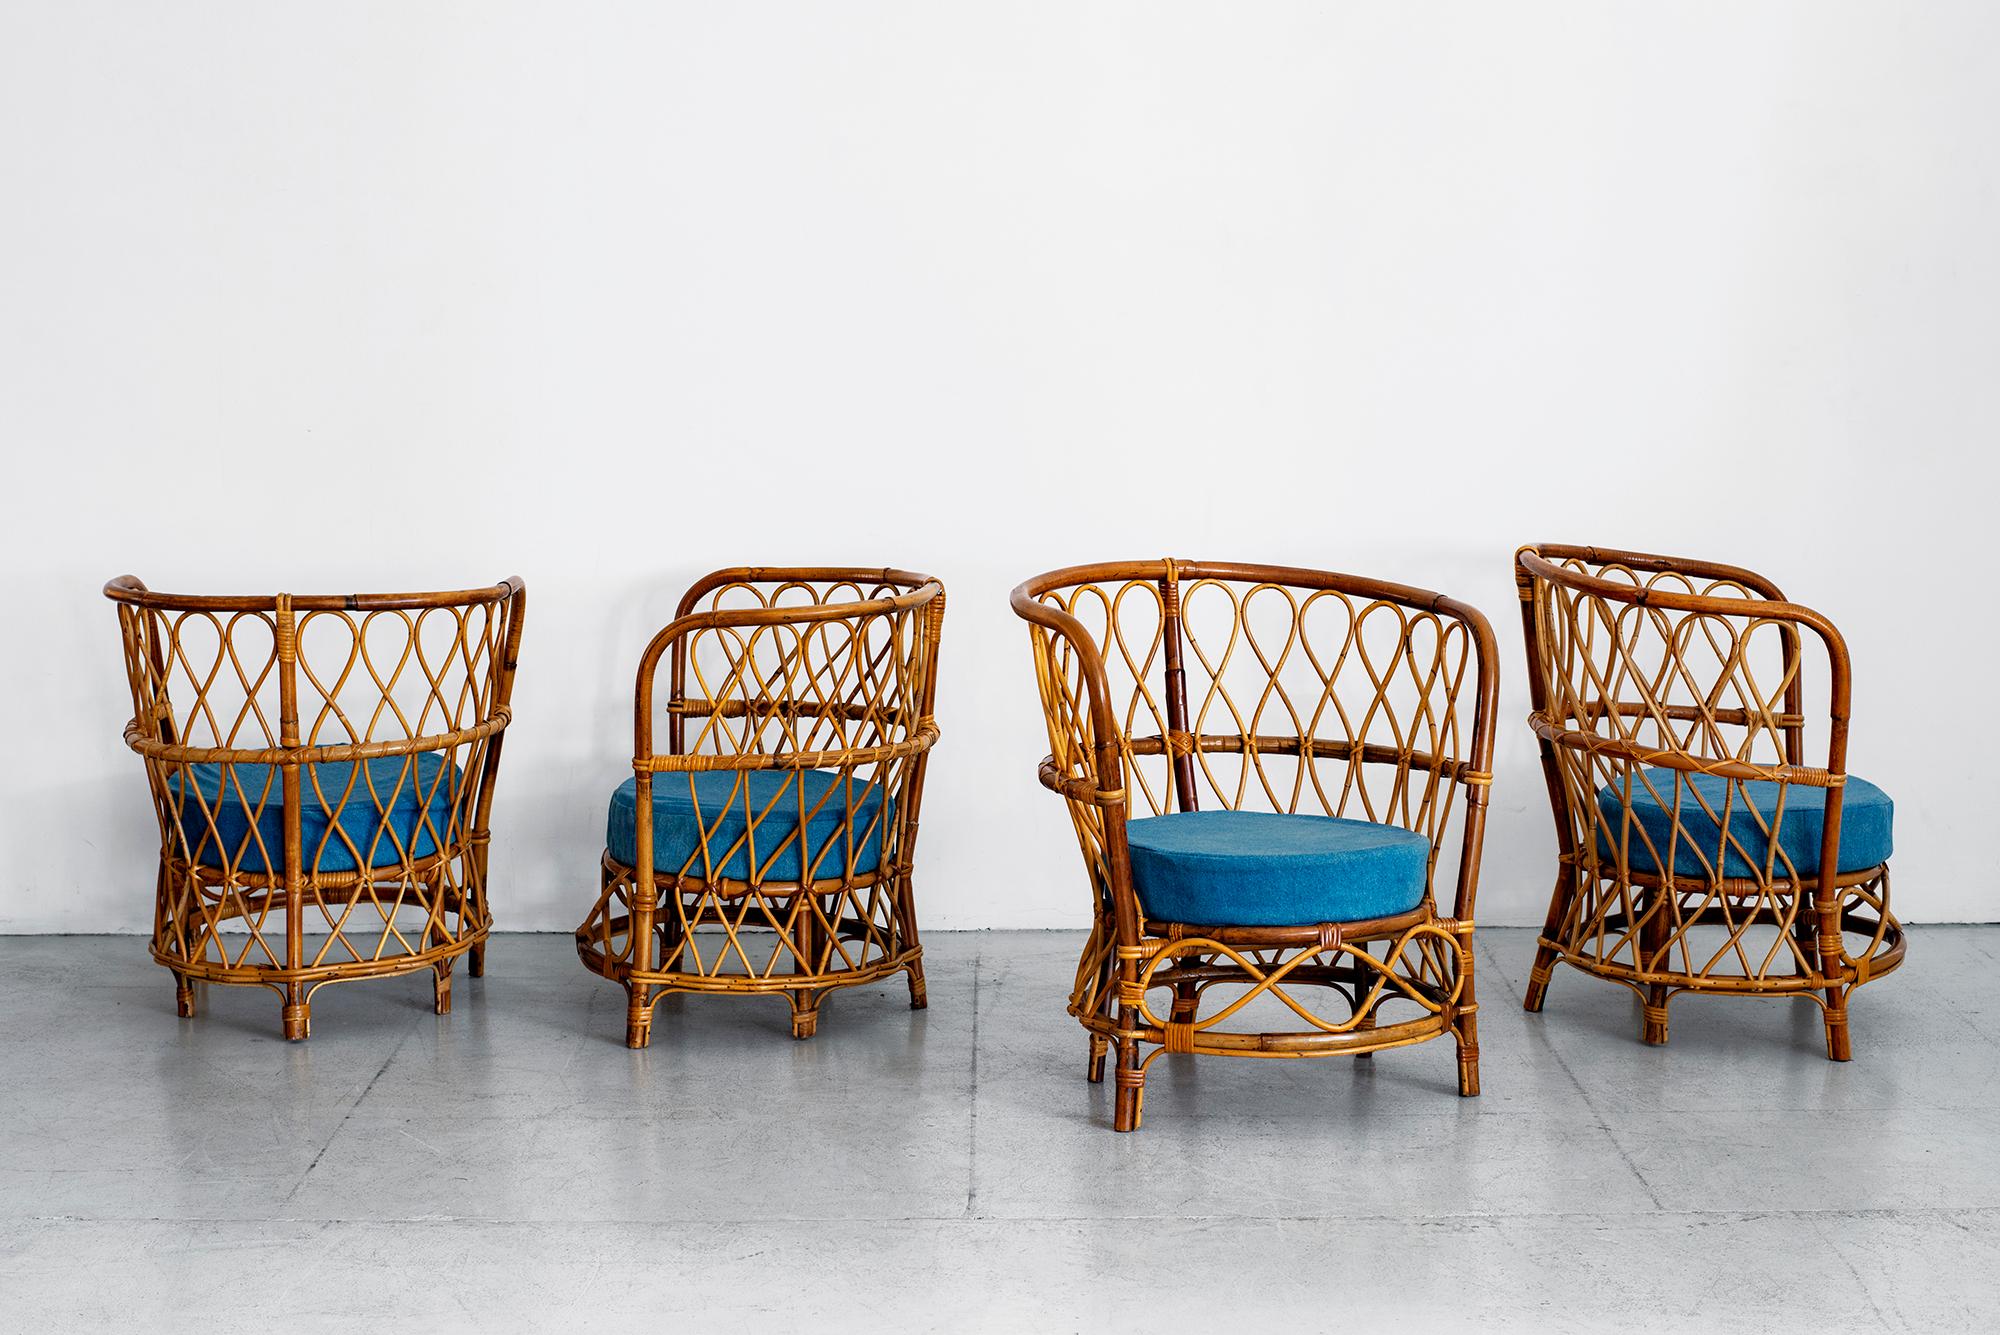 Satz von vier Sesseln mit Rohrgeflecht, um 1940 von Lio Carminati 
Wunderschöne geschwungene Form mit originalen blauen Leinenpolstern auf den Sitzen
Haus & Garten Produktion - 1940er Jahre.

 